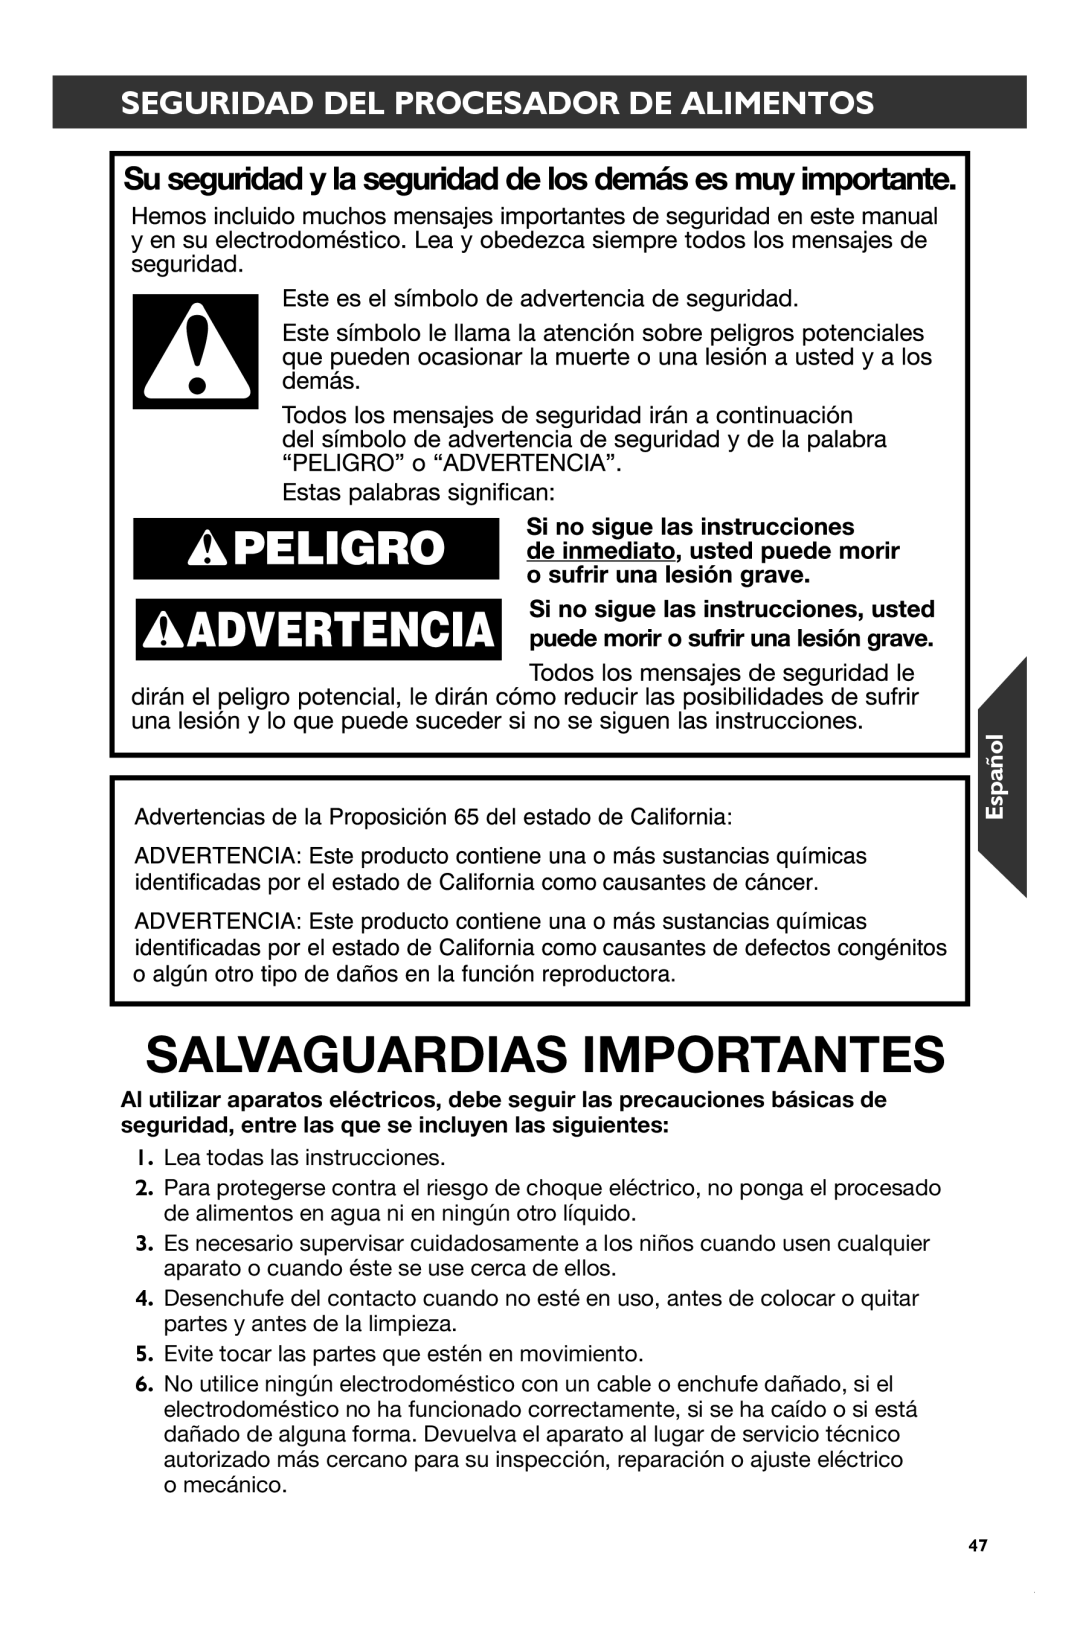 KitchenAid KFP1133 manual Salvaguardias Importantes, Seguridad Del Procesador De Alimentos, Español 